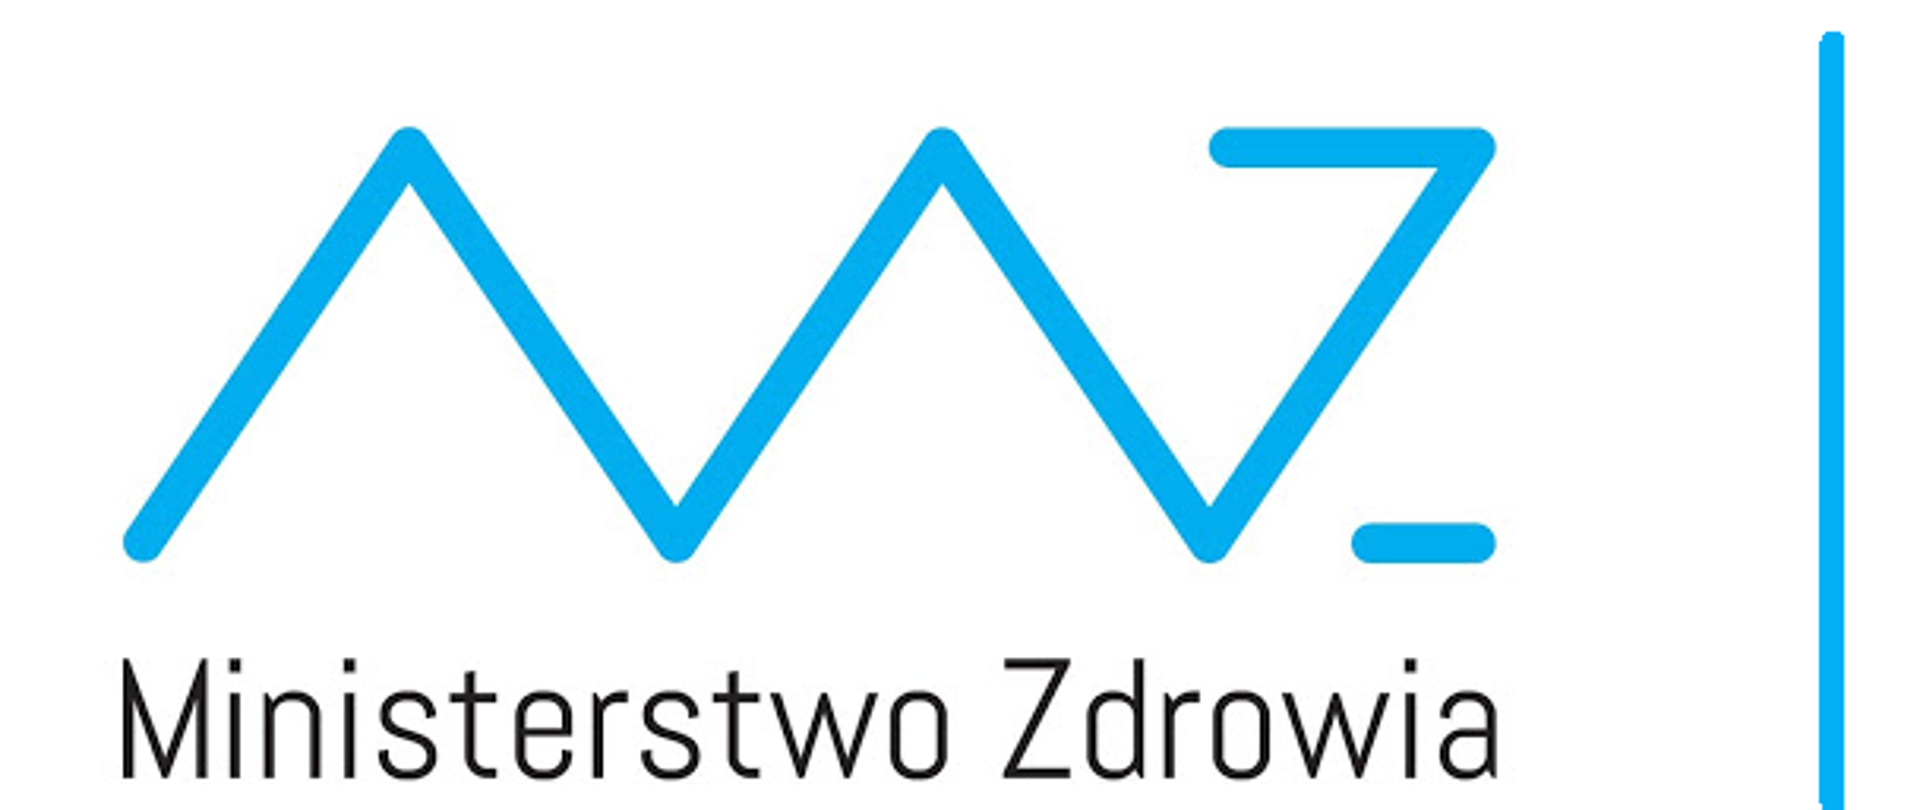 Grafika przedstawiająca logo Ministerstwa Zdrowia - litery MZ w kolorze niebieskim, a pod nimi napis Ministerstwo Zdrowia